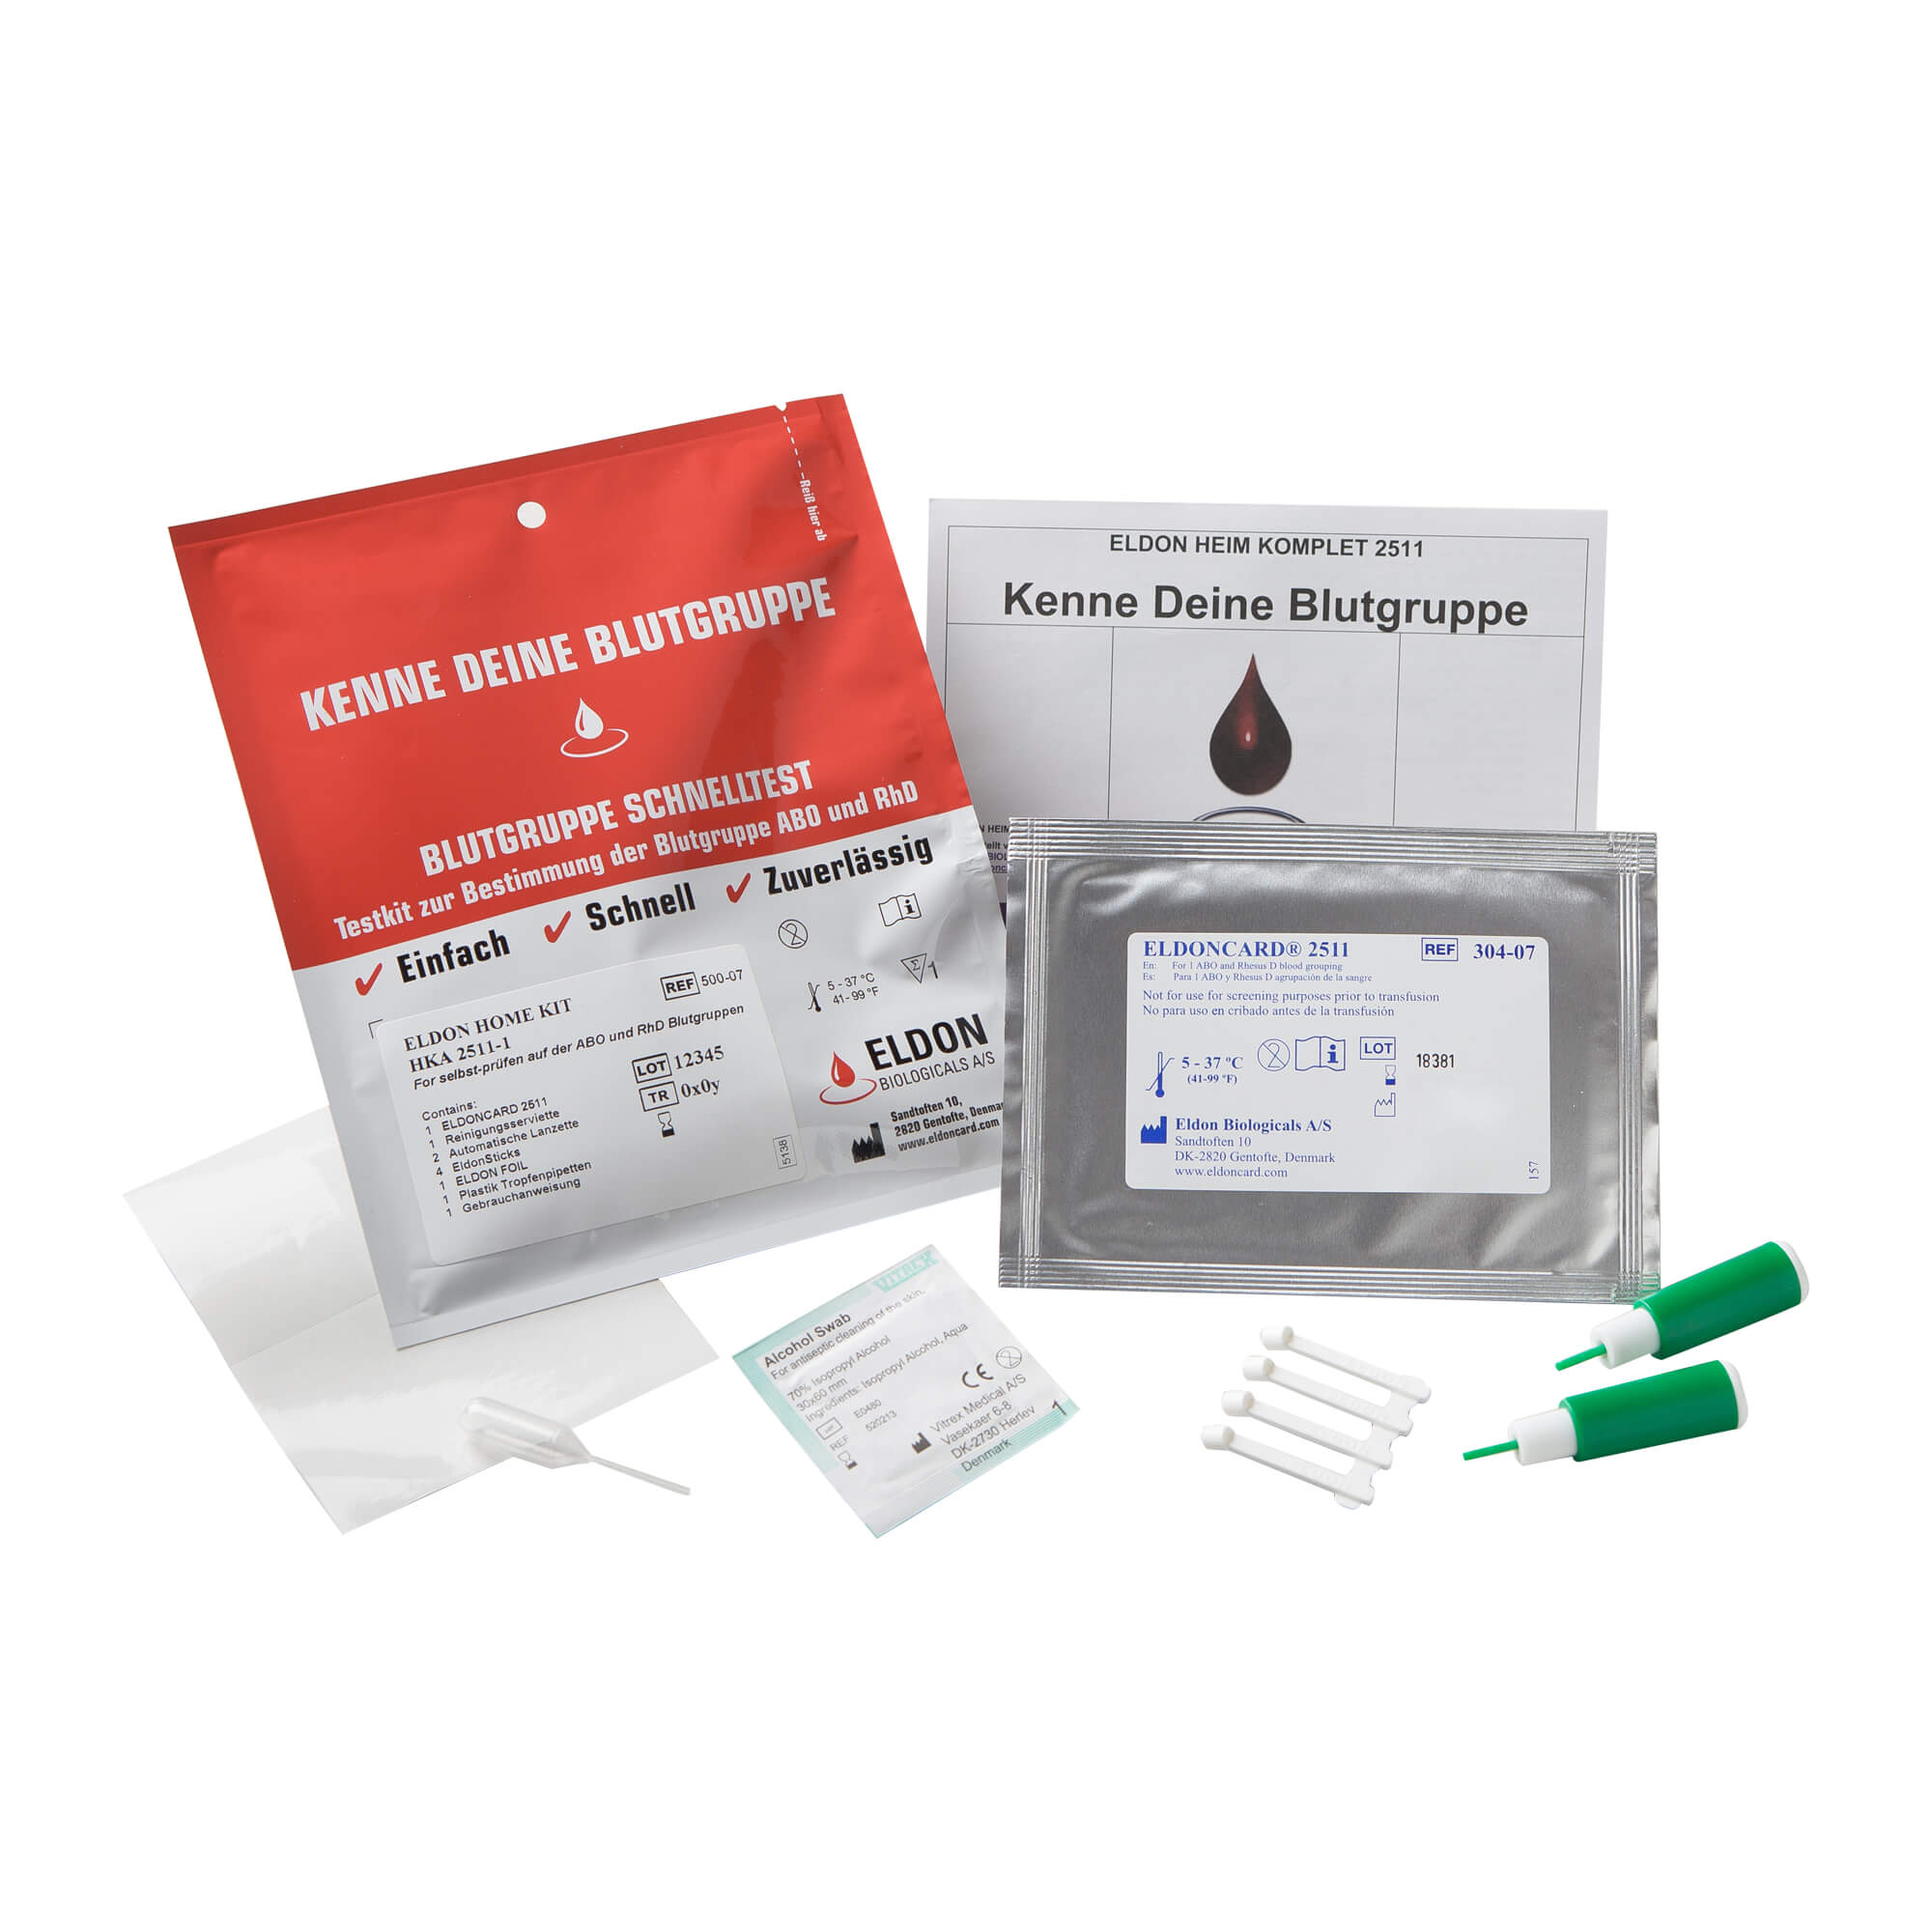 Testkit zur Bestimmung der Blutgruppe ABO und RhD.